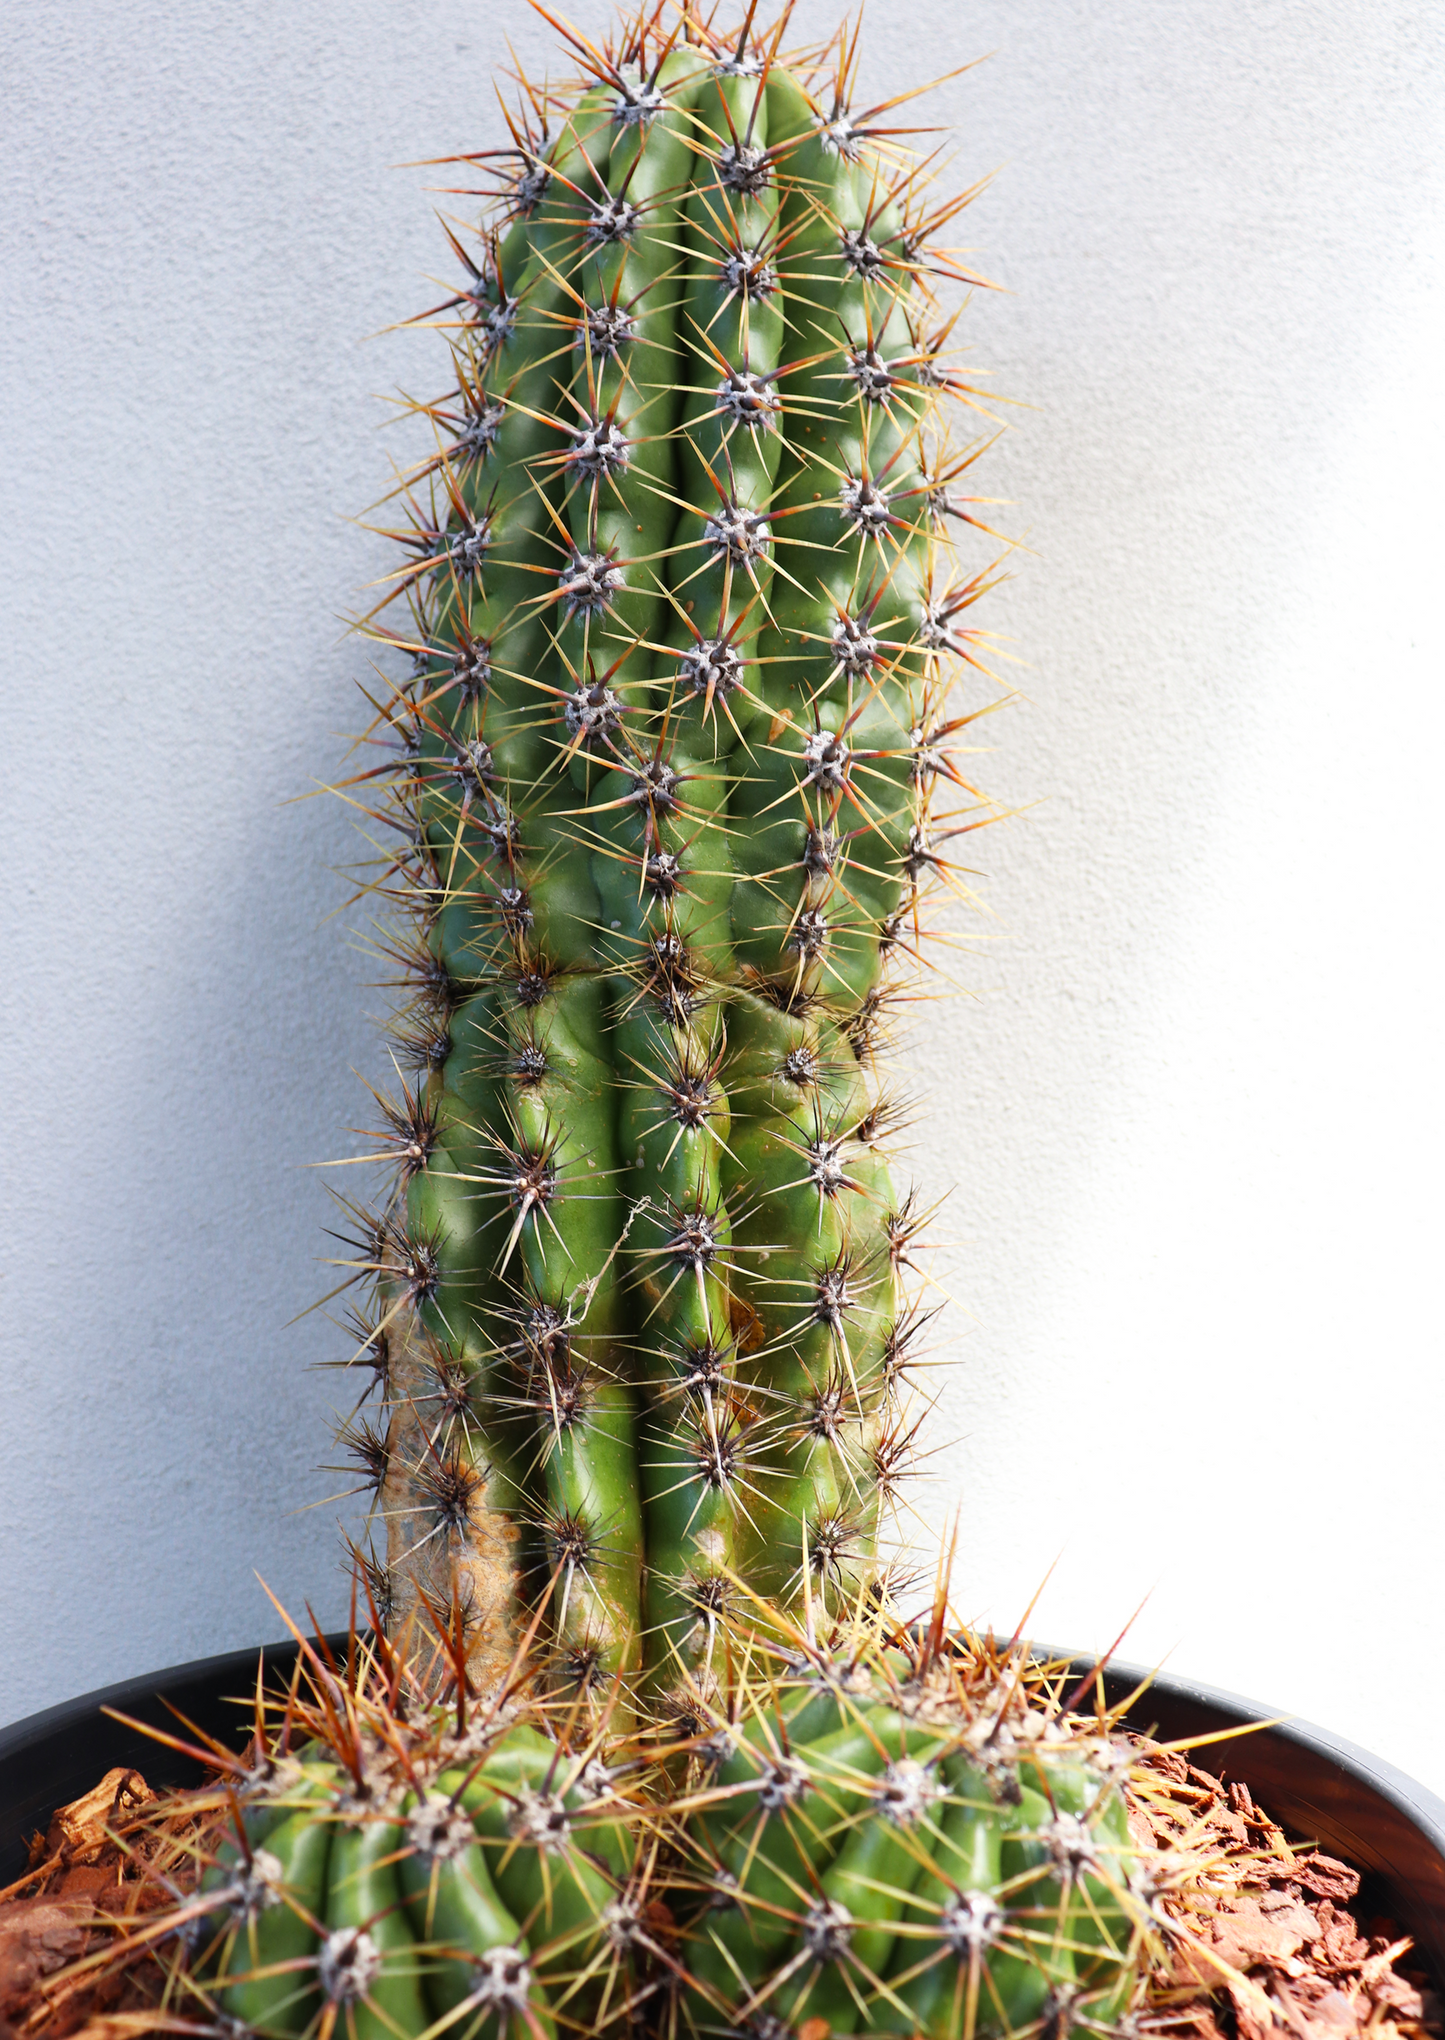 Trichocereus Gladiatus Cactus